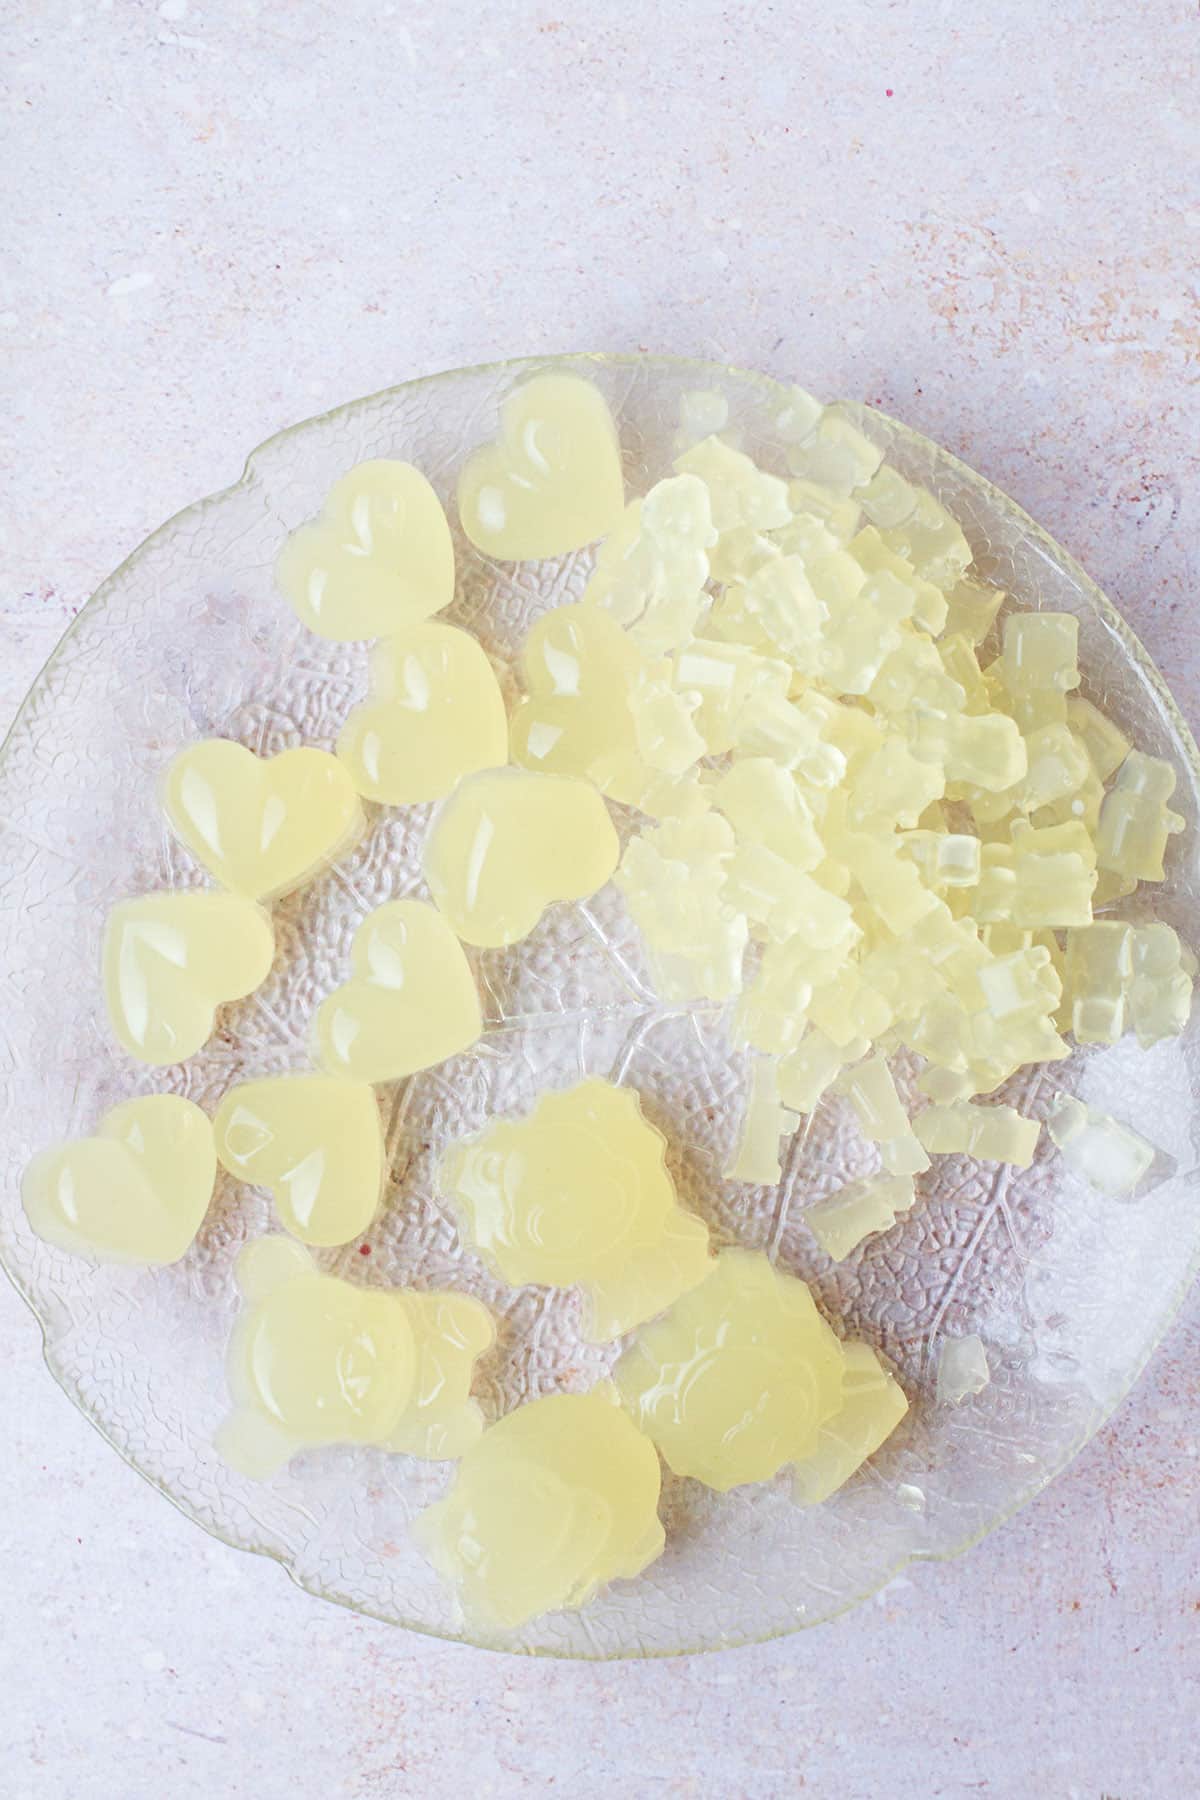 Glass plate with ginger-lemon gummy bears.